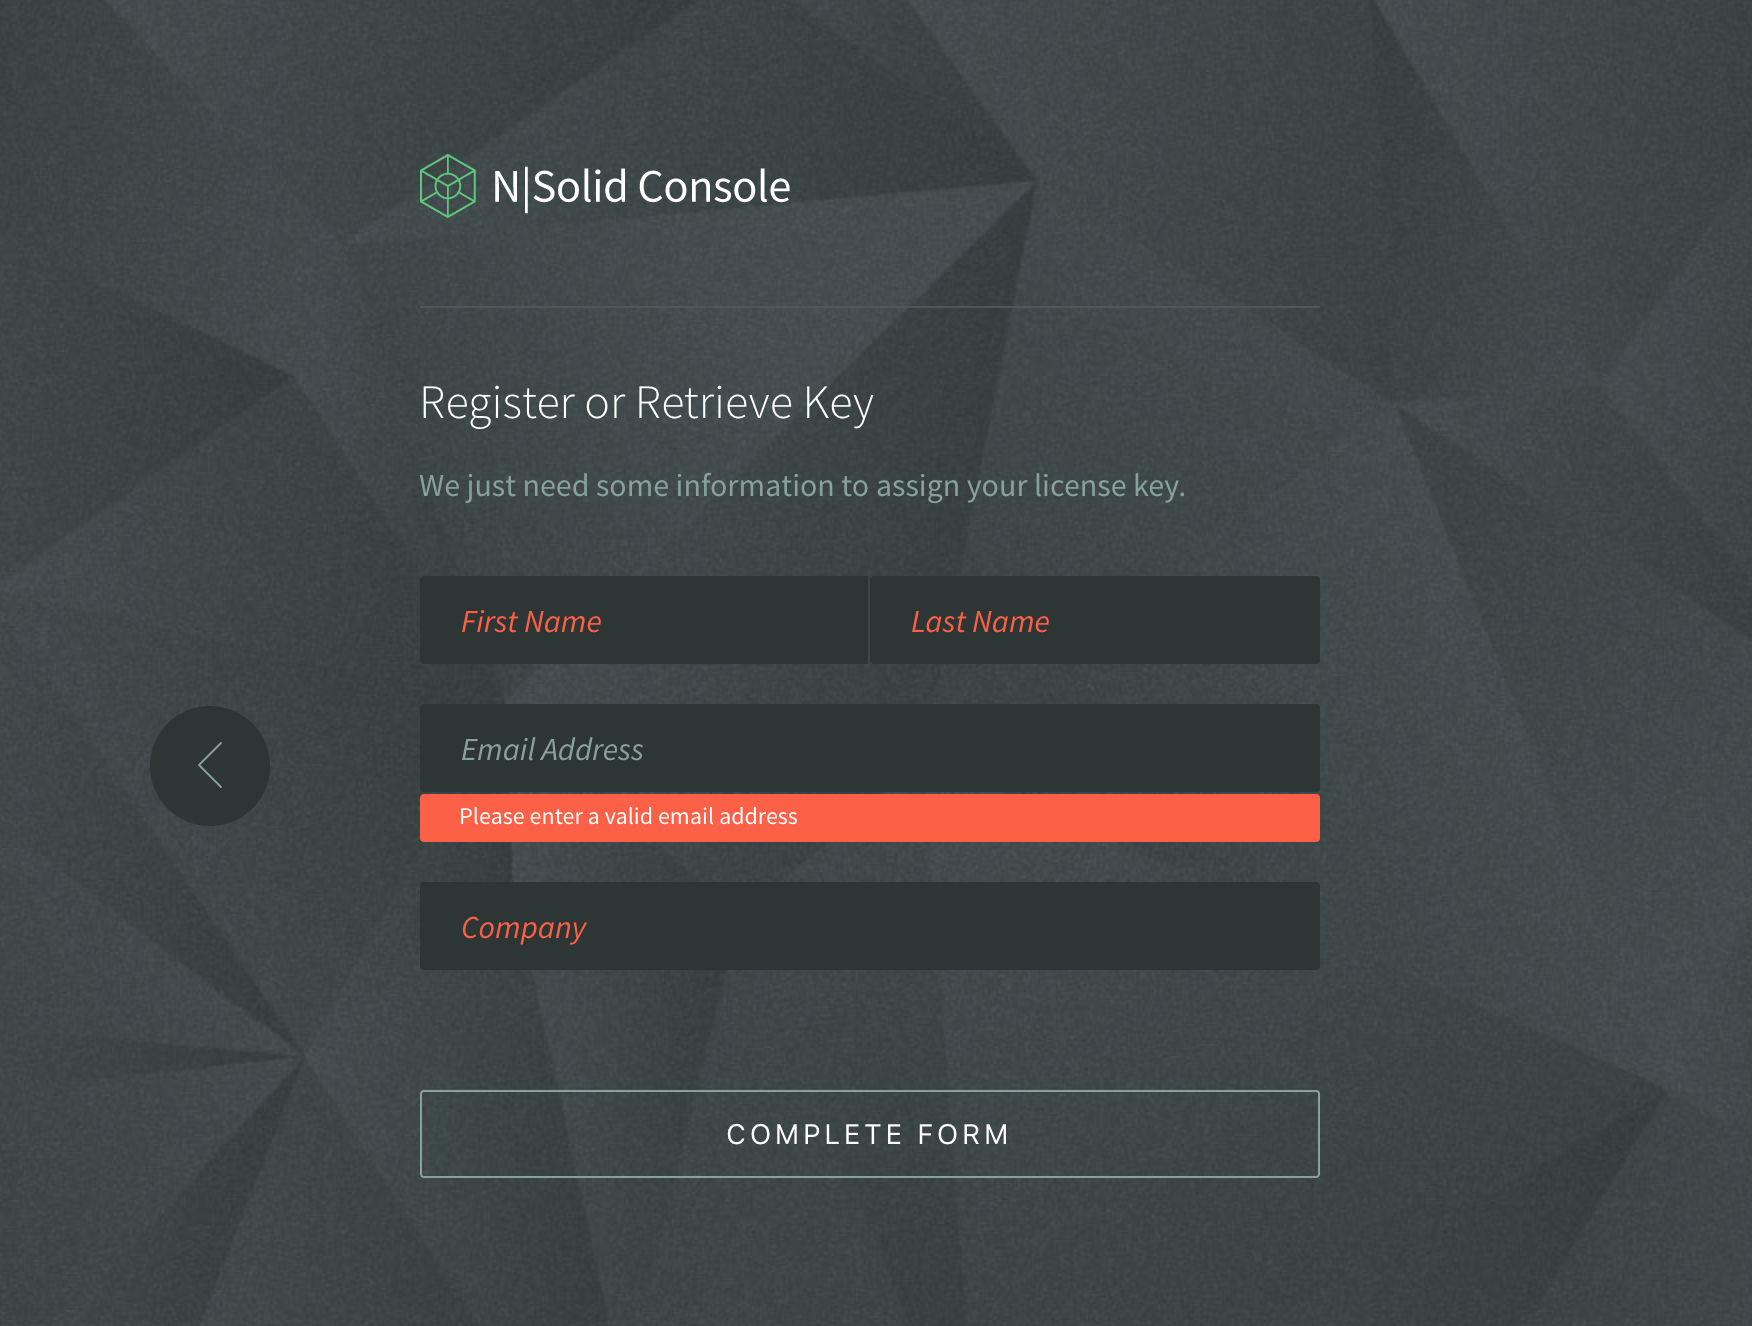 Register or Retrieve Key